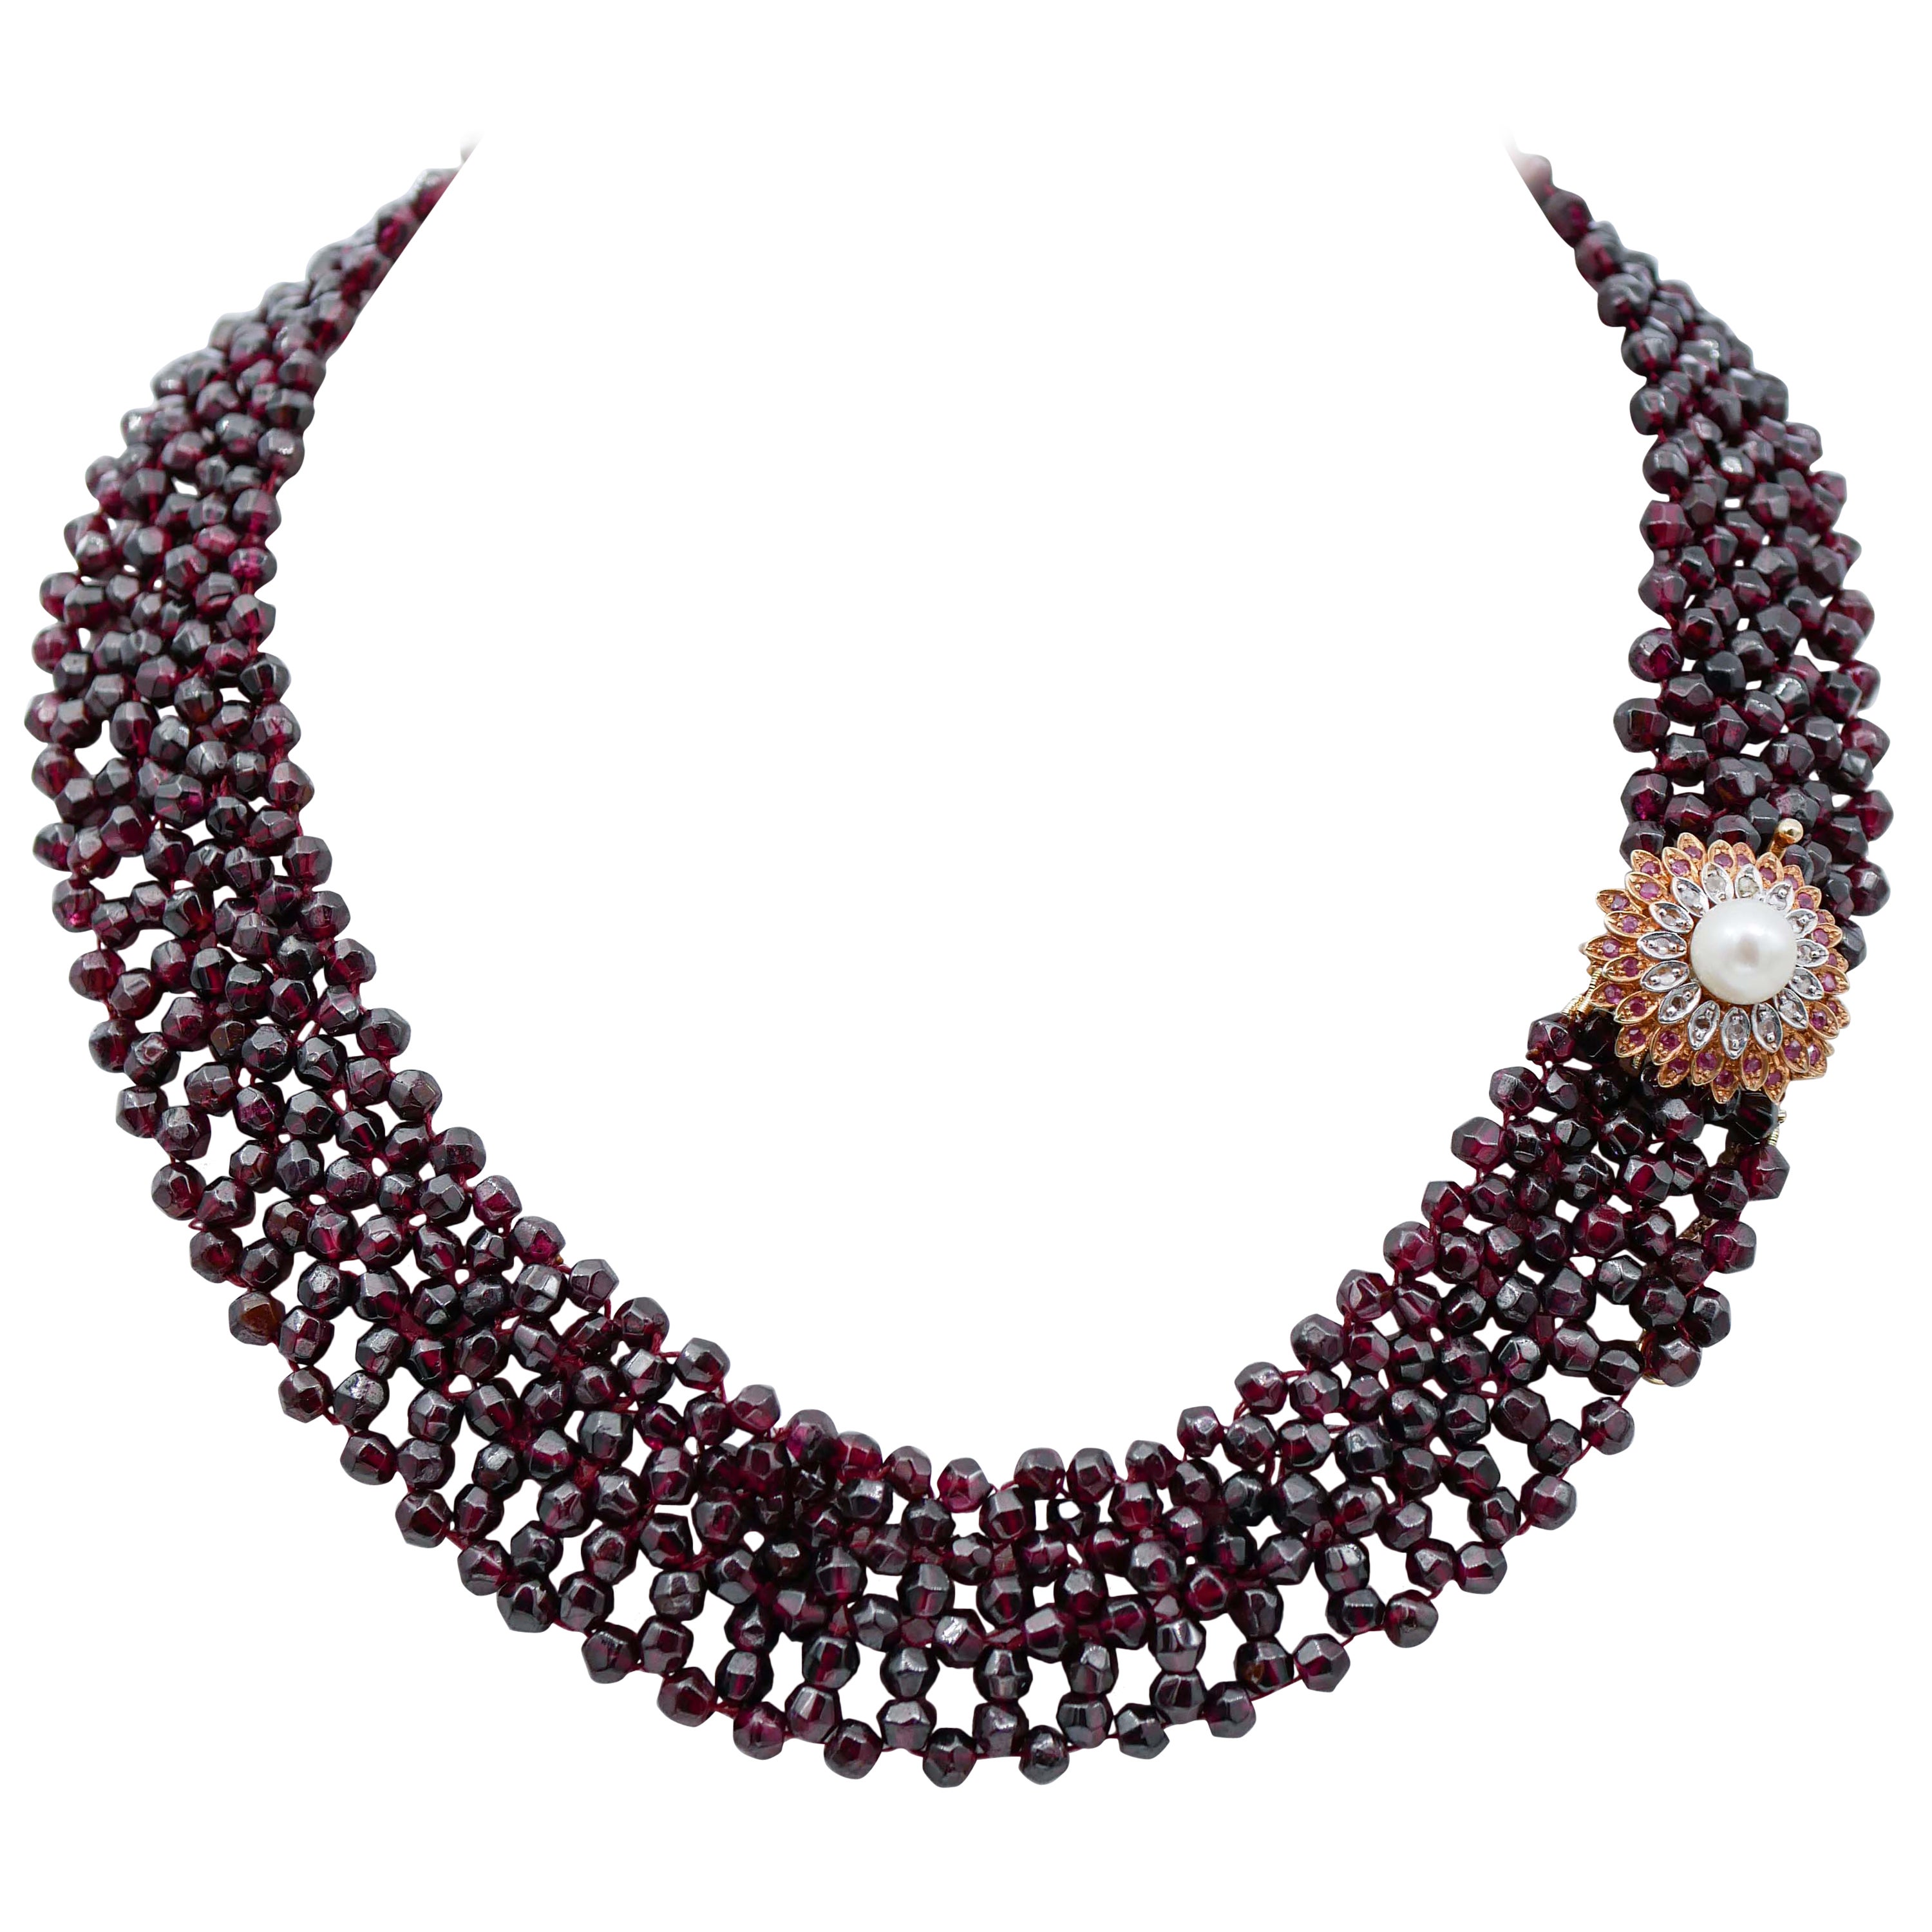 Halskette aus Roségold und Silber mit Granaten, Perlen, Rubinen, Diamanten, Diamanten